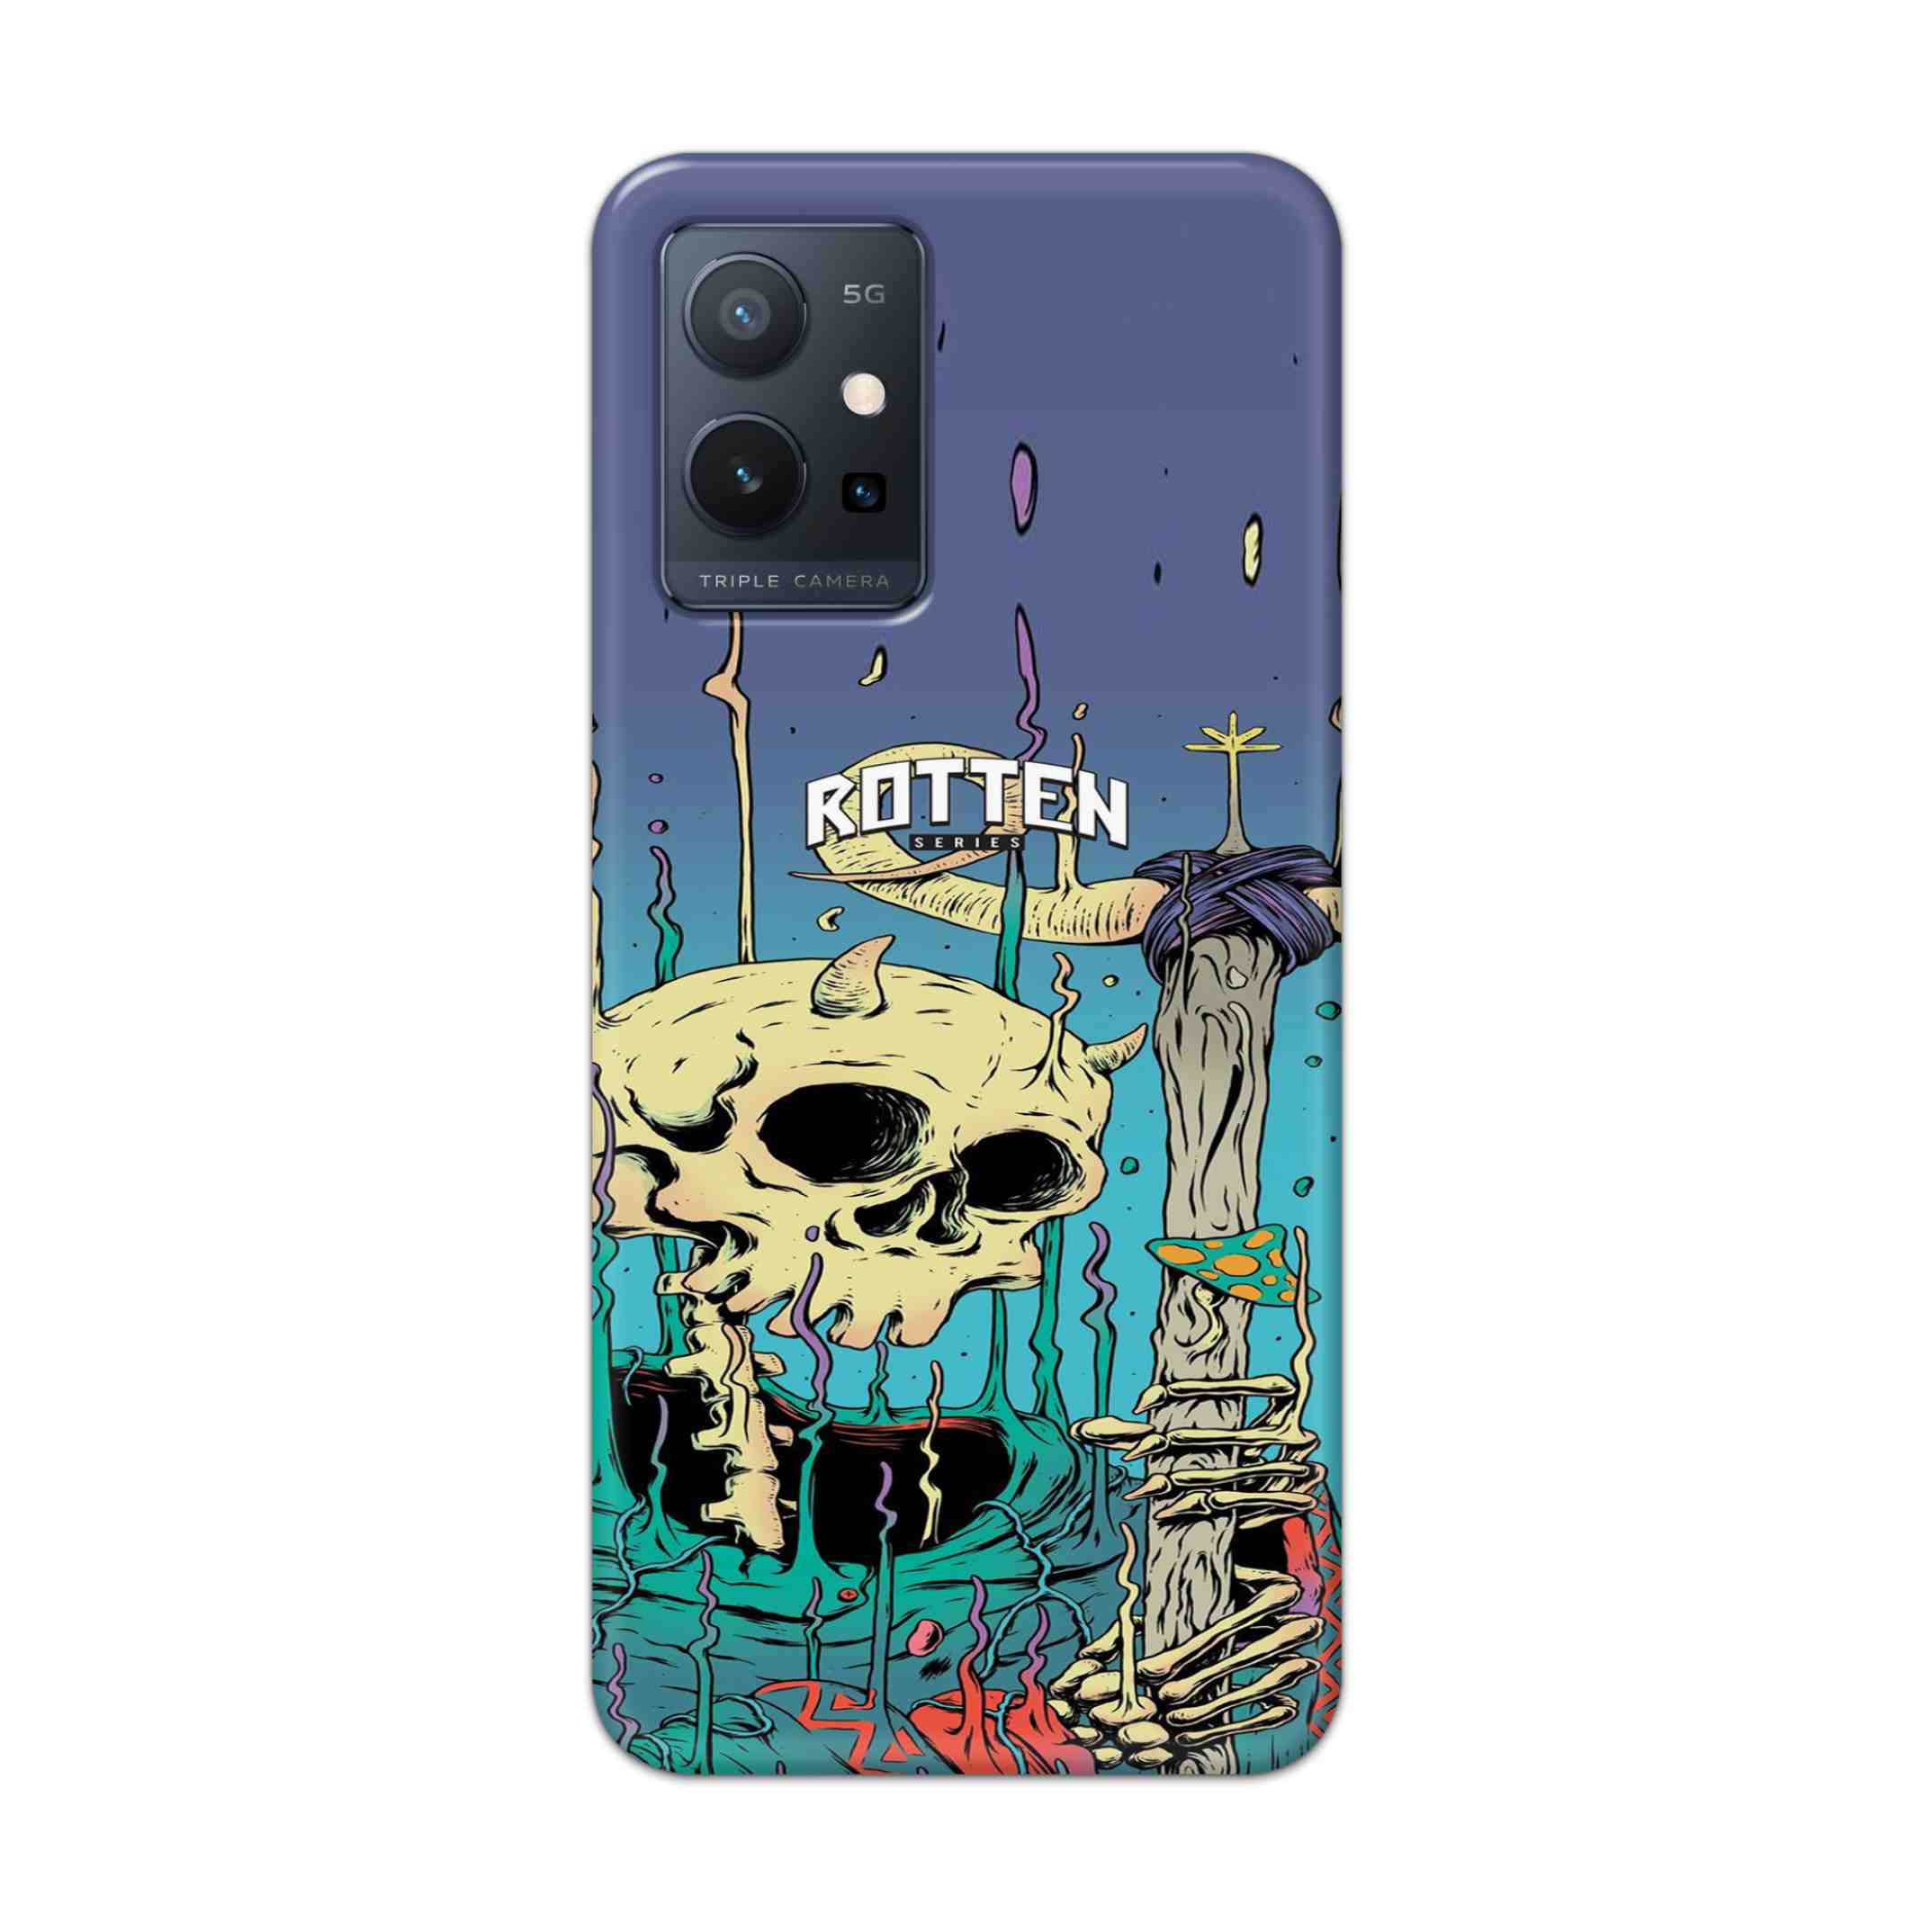 Buy Skull Hard Back Mobile Phone Case Cover For Vivo T1 5G Online